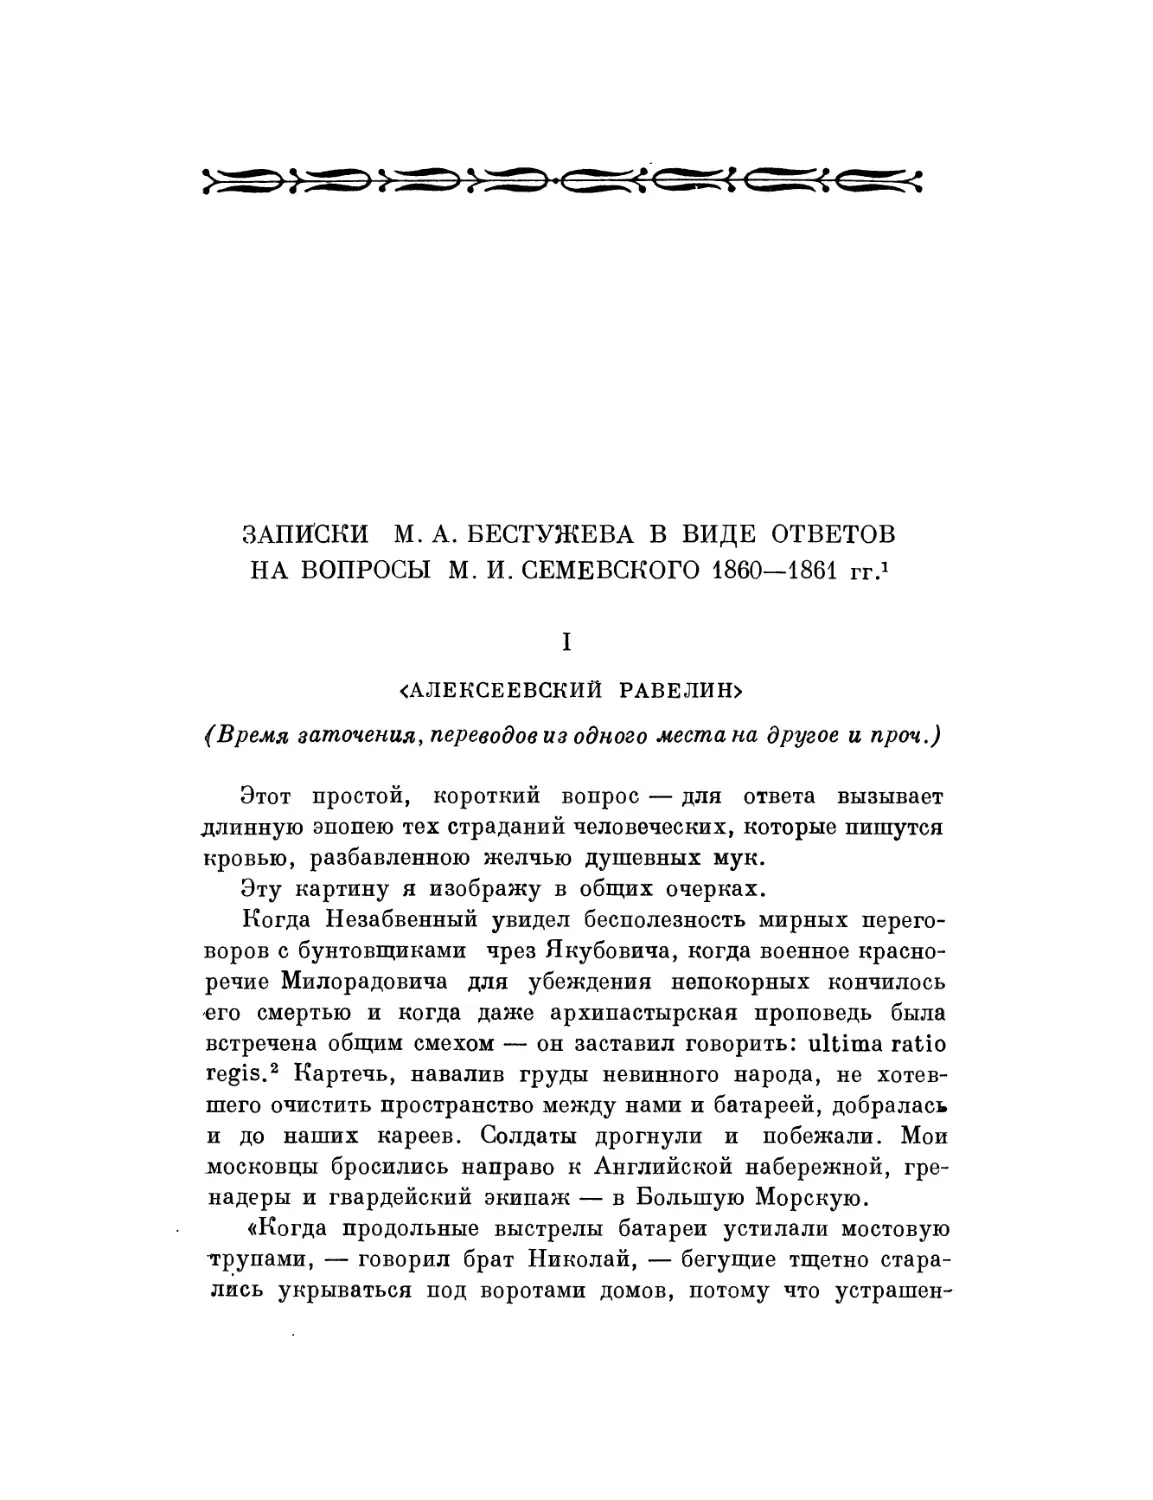 Записки М. А. Бестужева в виде ответов на вопросы М. И. Семевского 1860—1861 гг